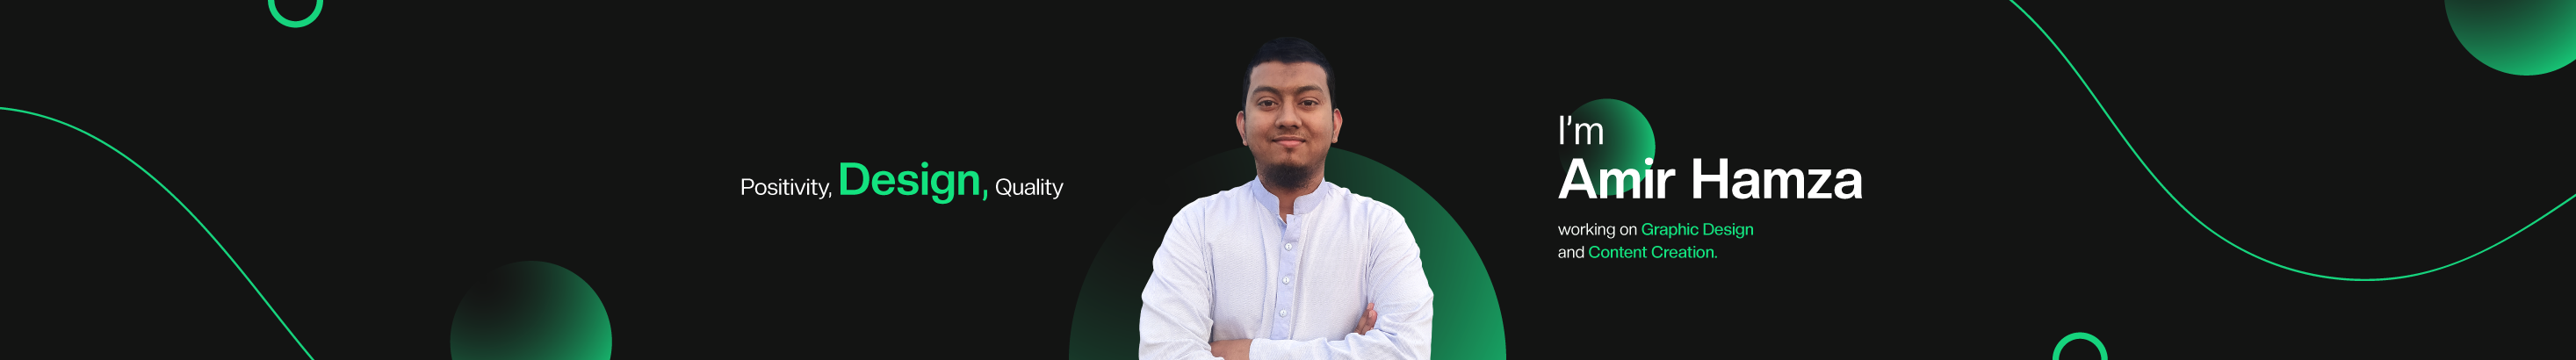 Amir Hamza profil başlığı